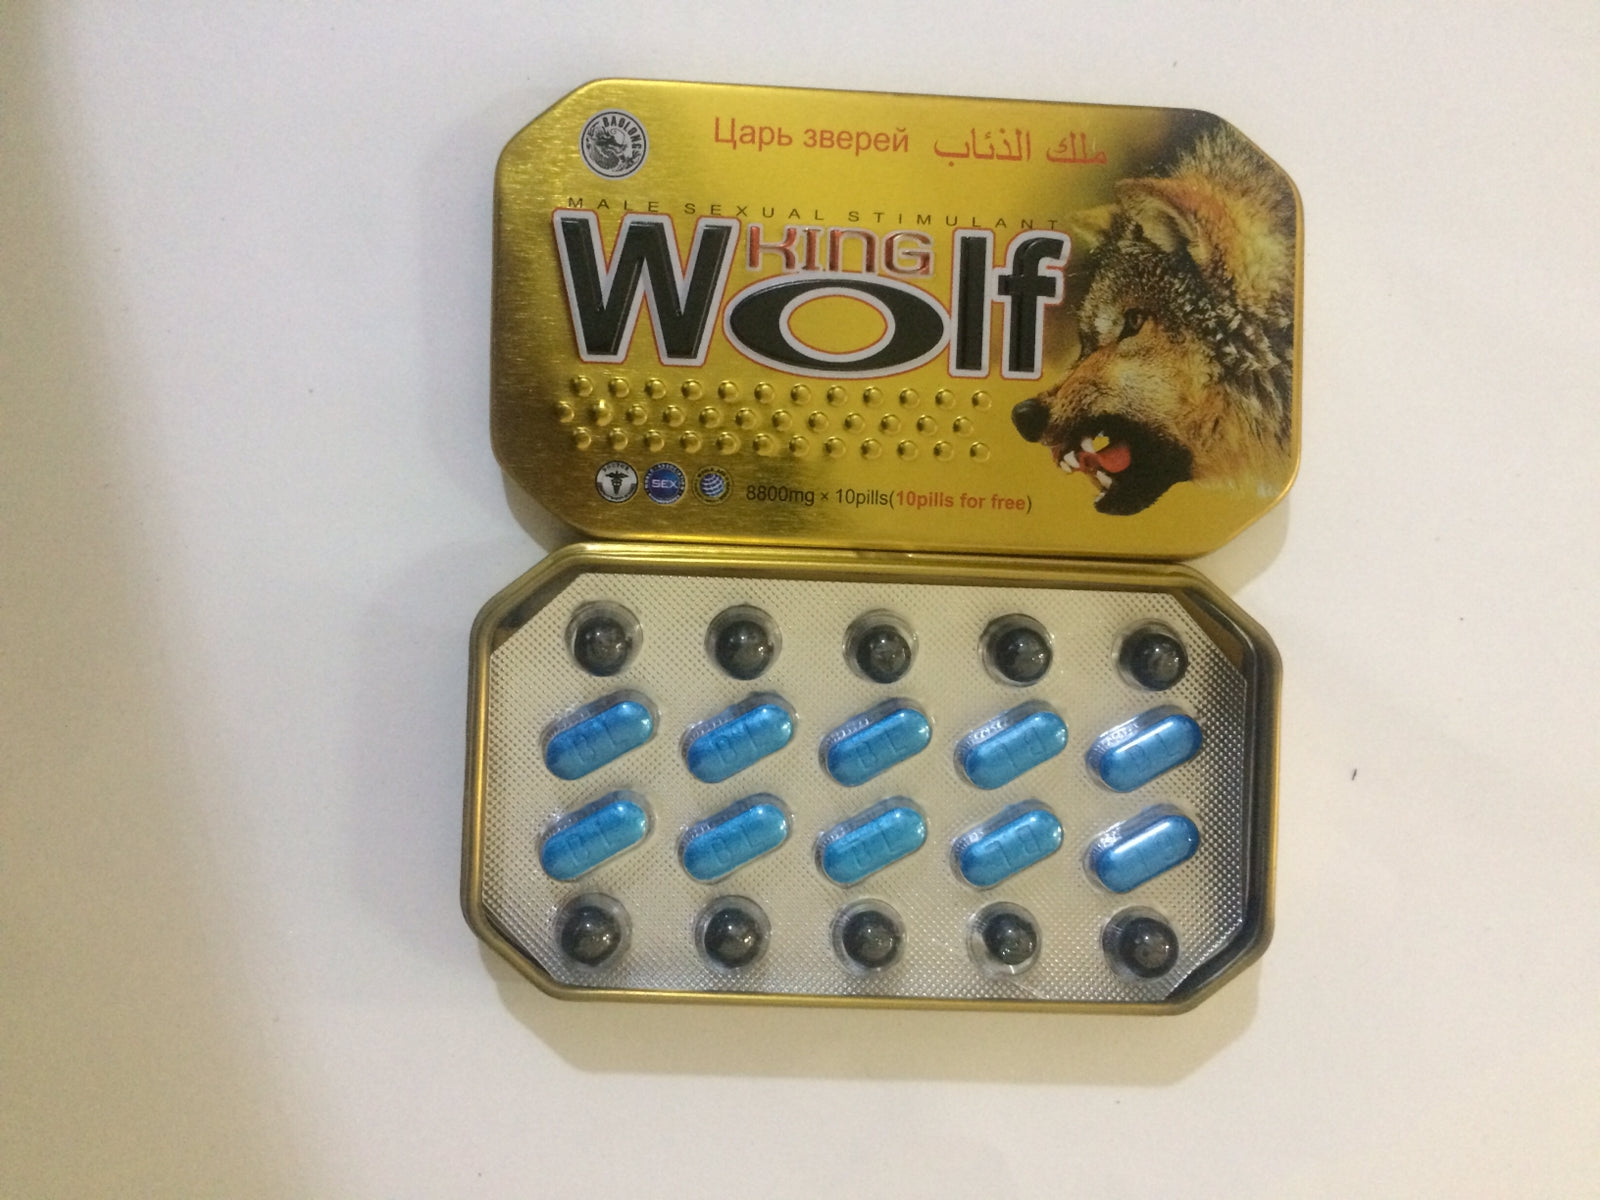 King Wolf Male Sexual Stimulant 8800mg x 10pills